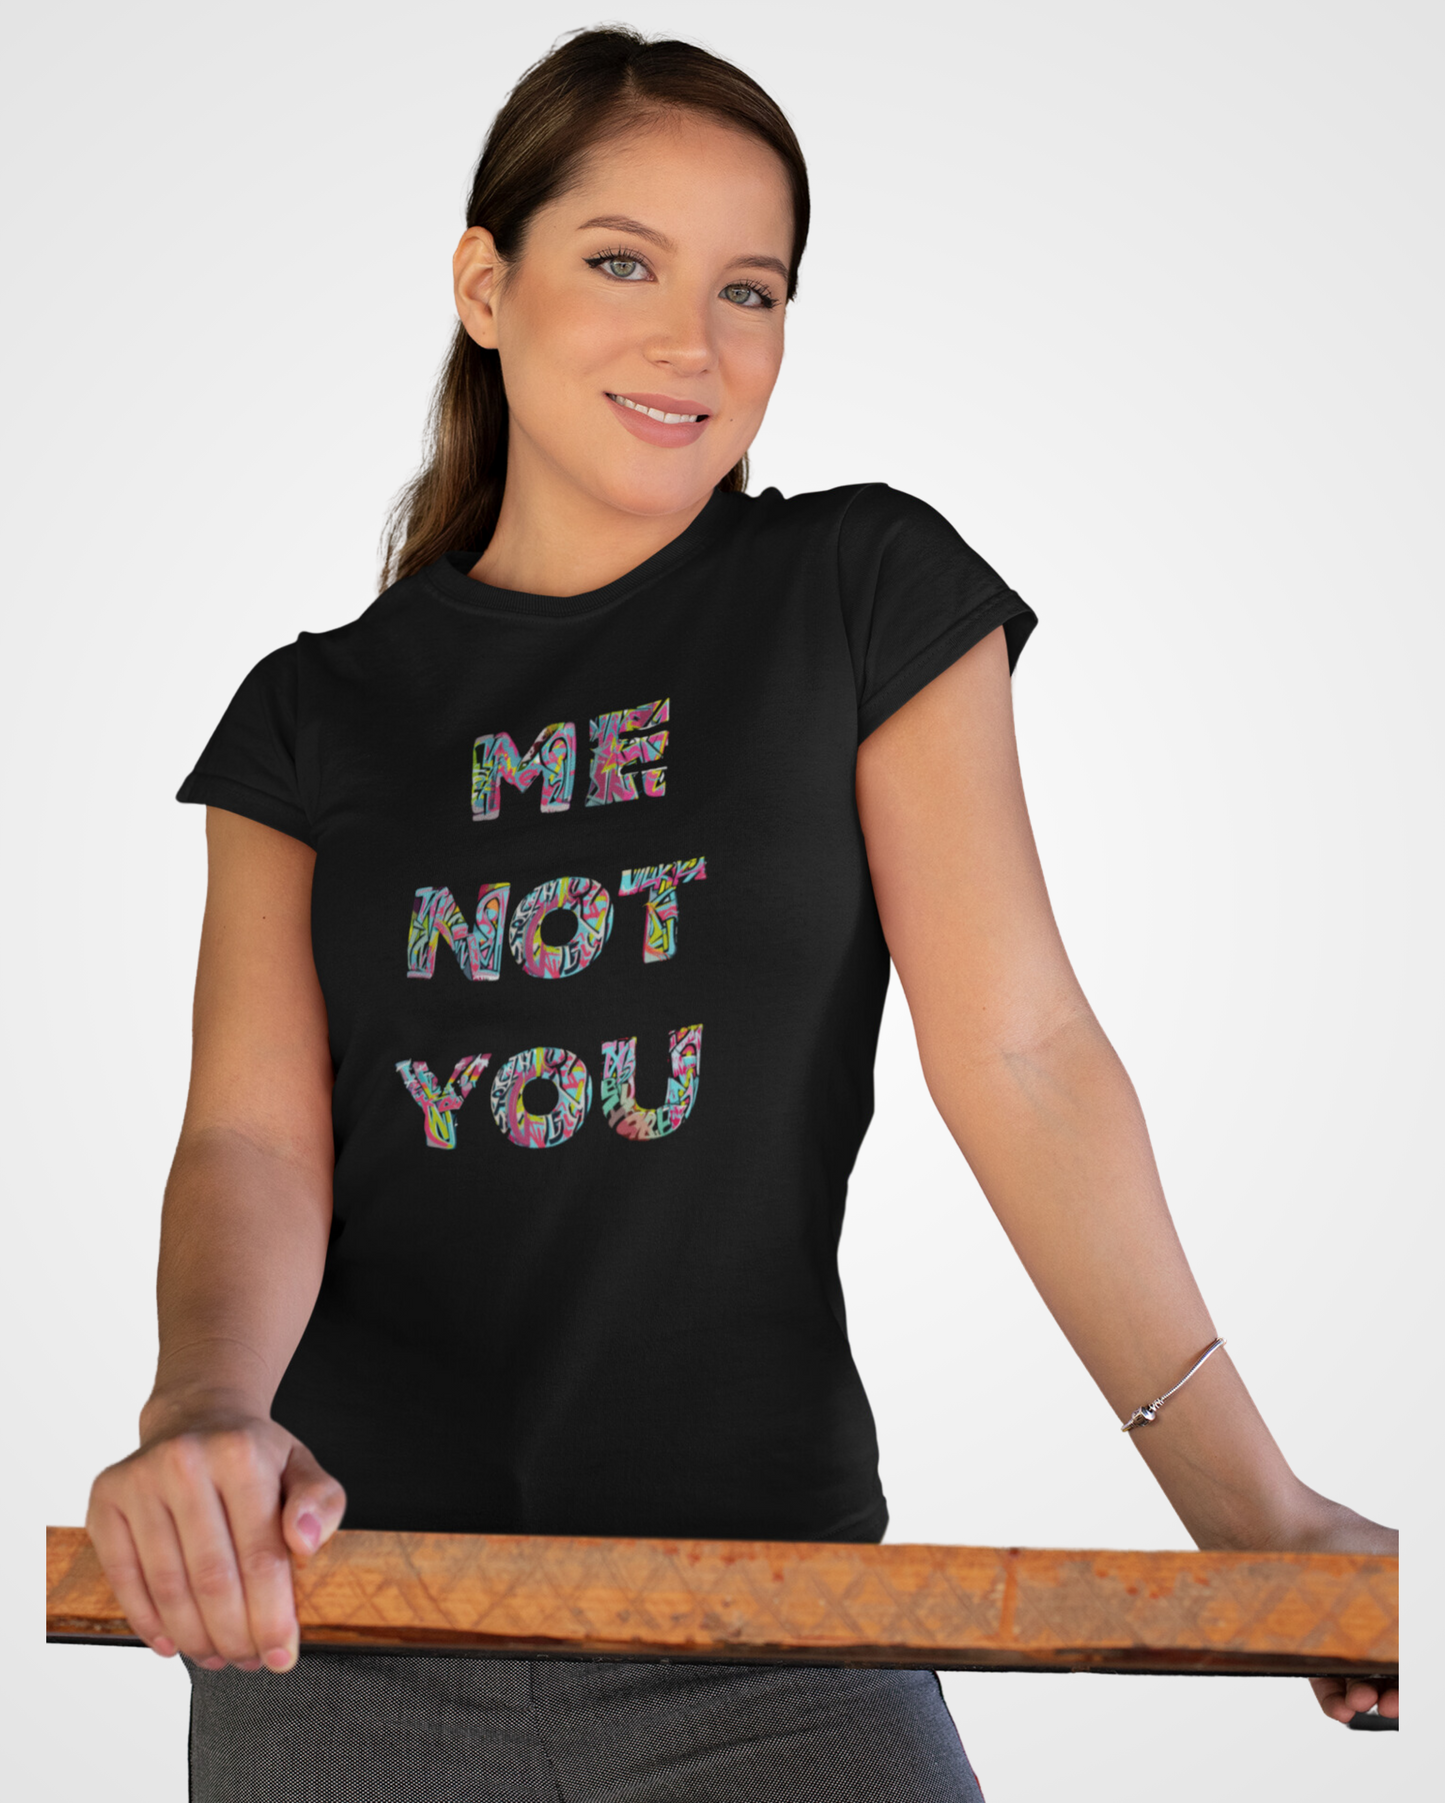 Women's Me not you Typographic T-shirt - Lama Fashion